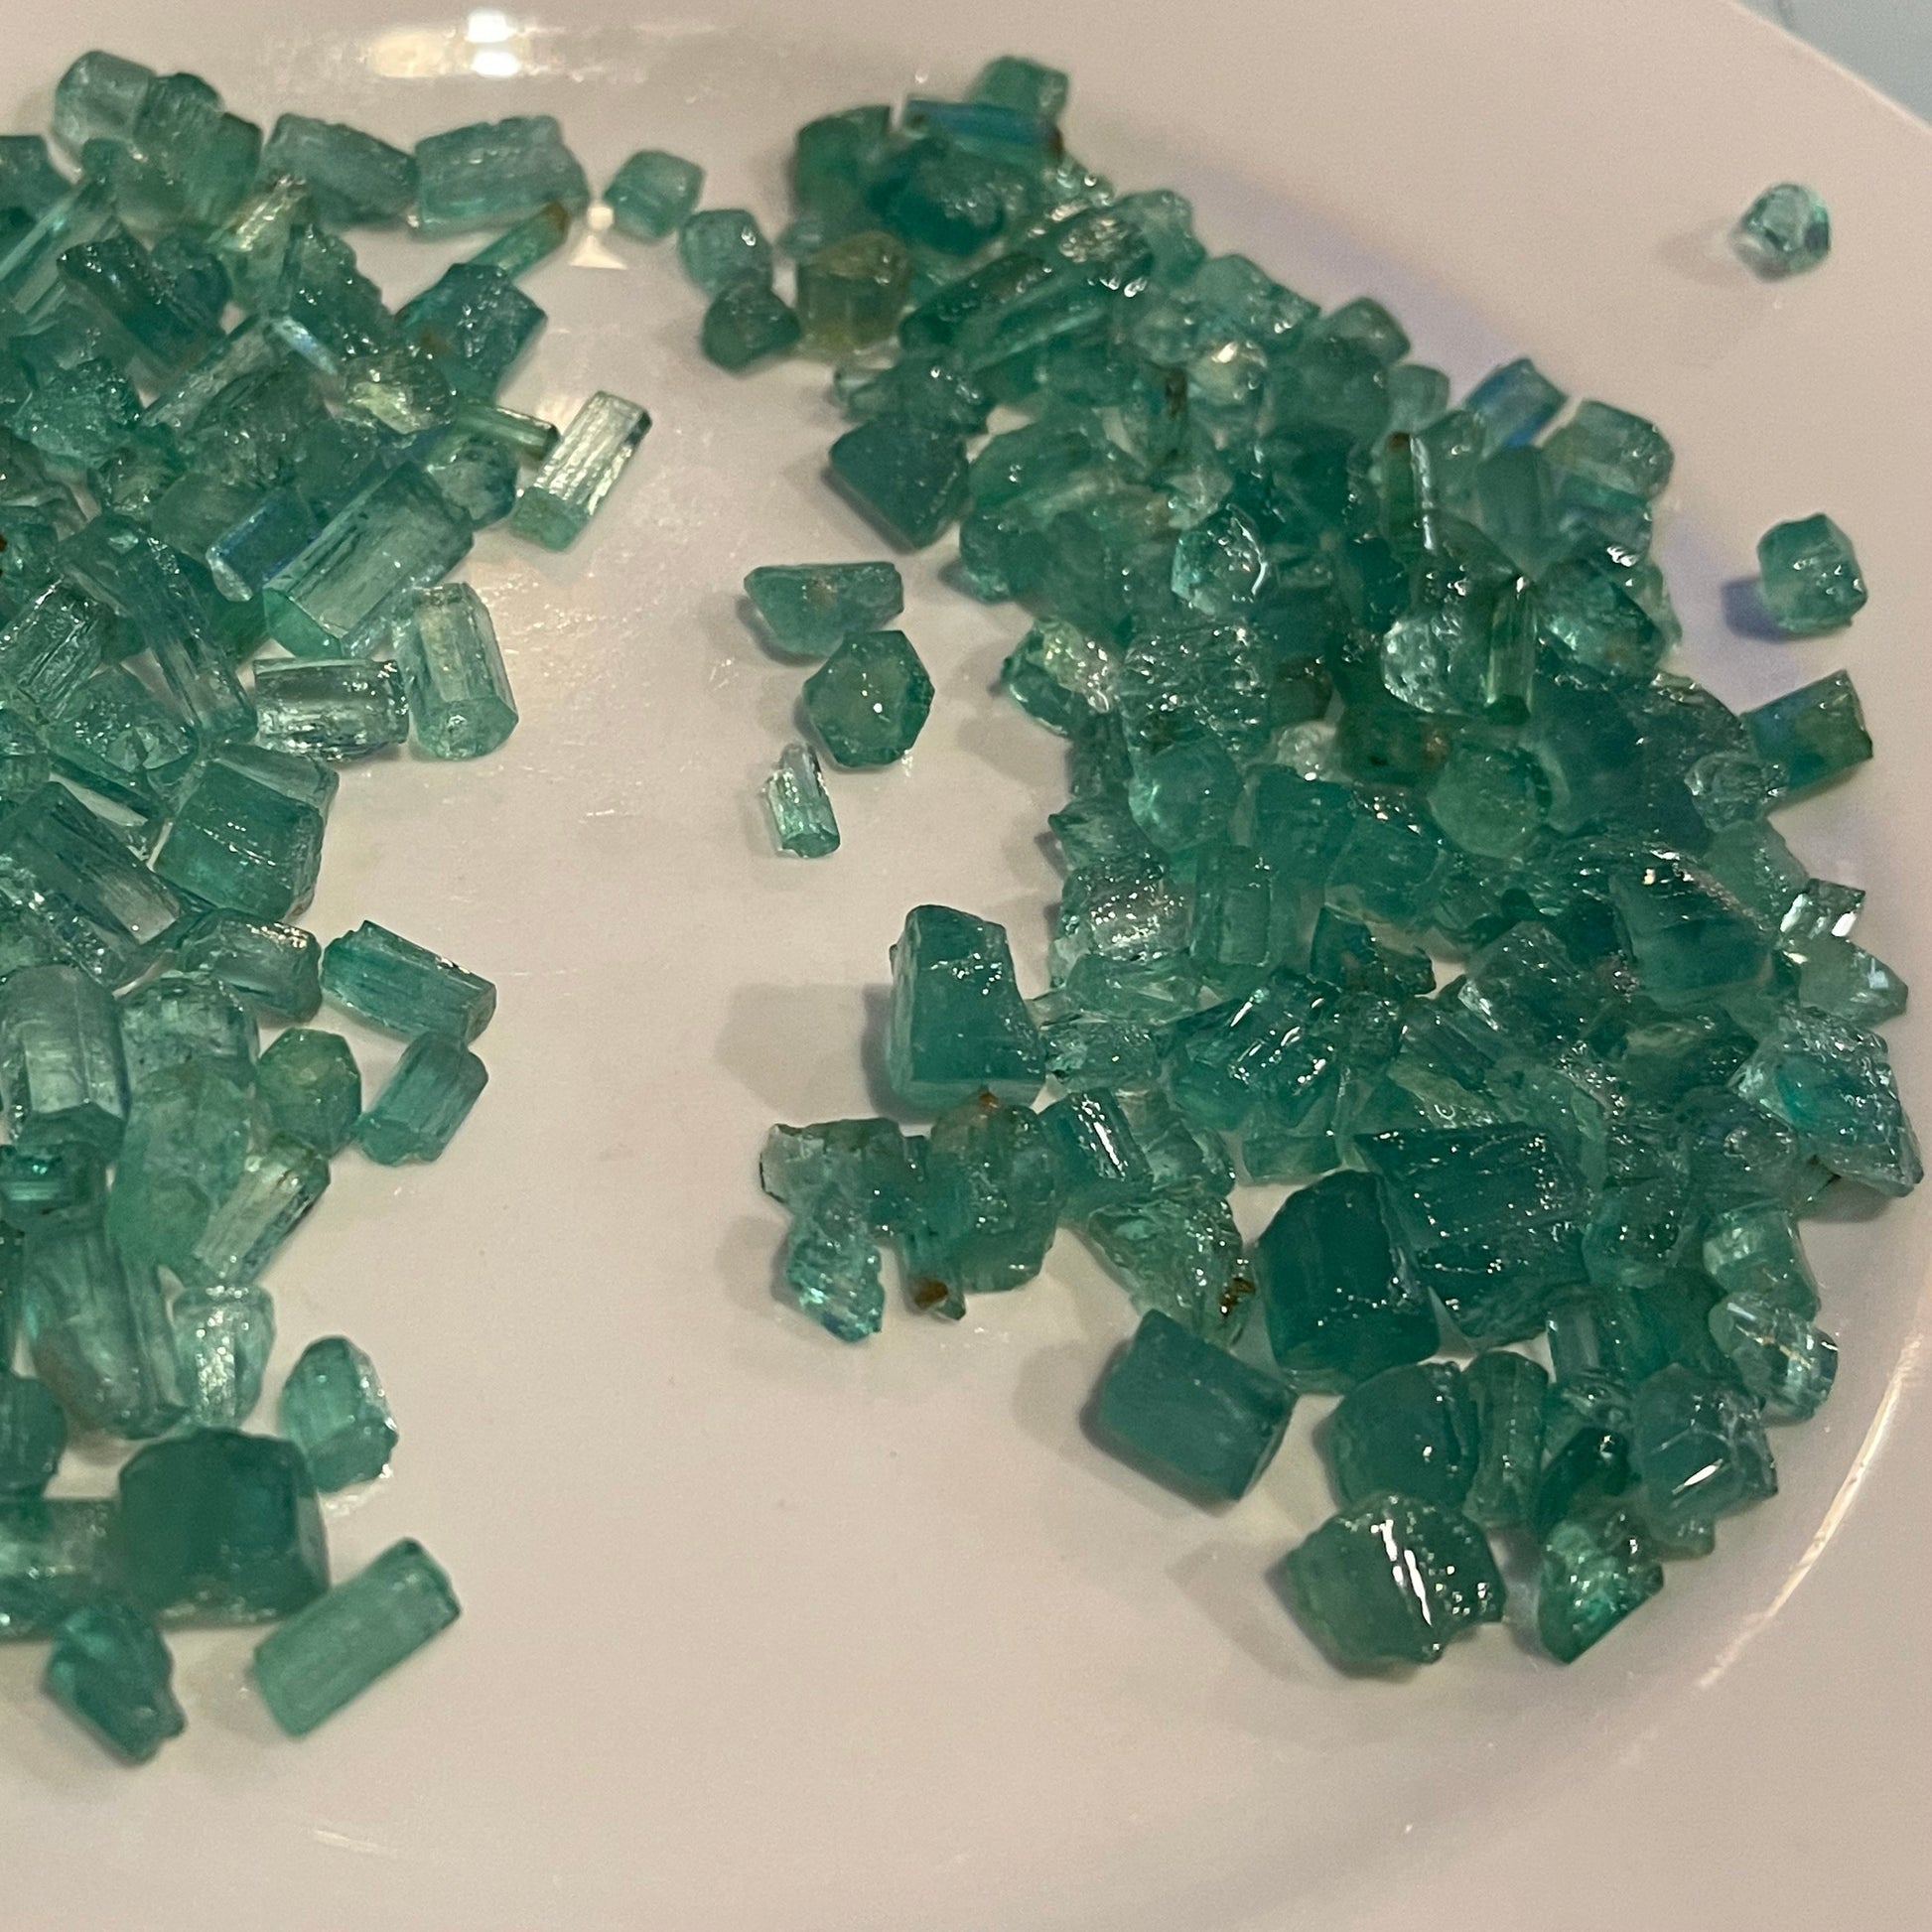 Uncut Emeralds Stones for Sale